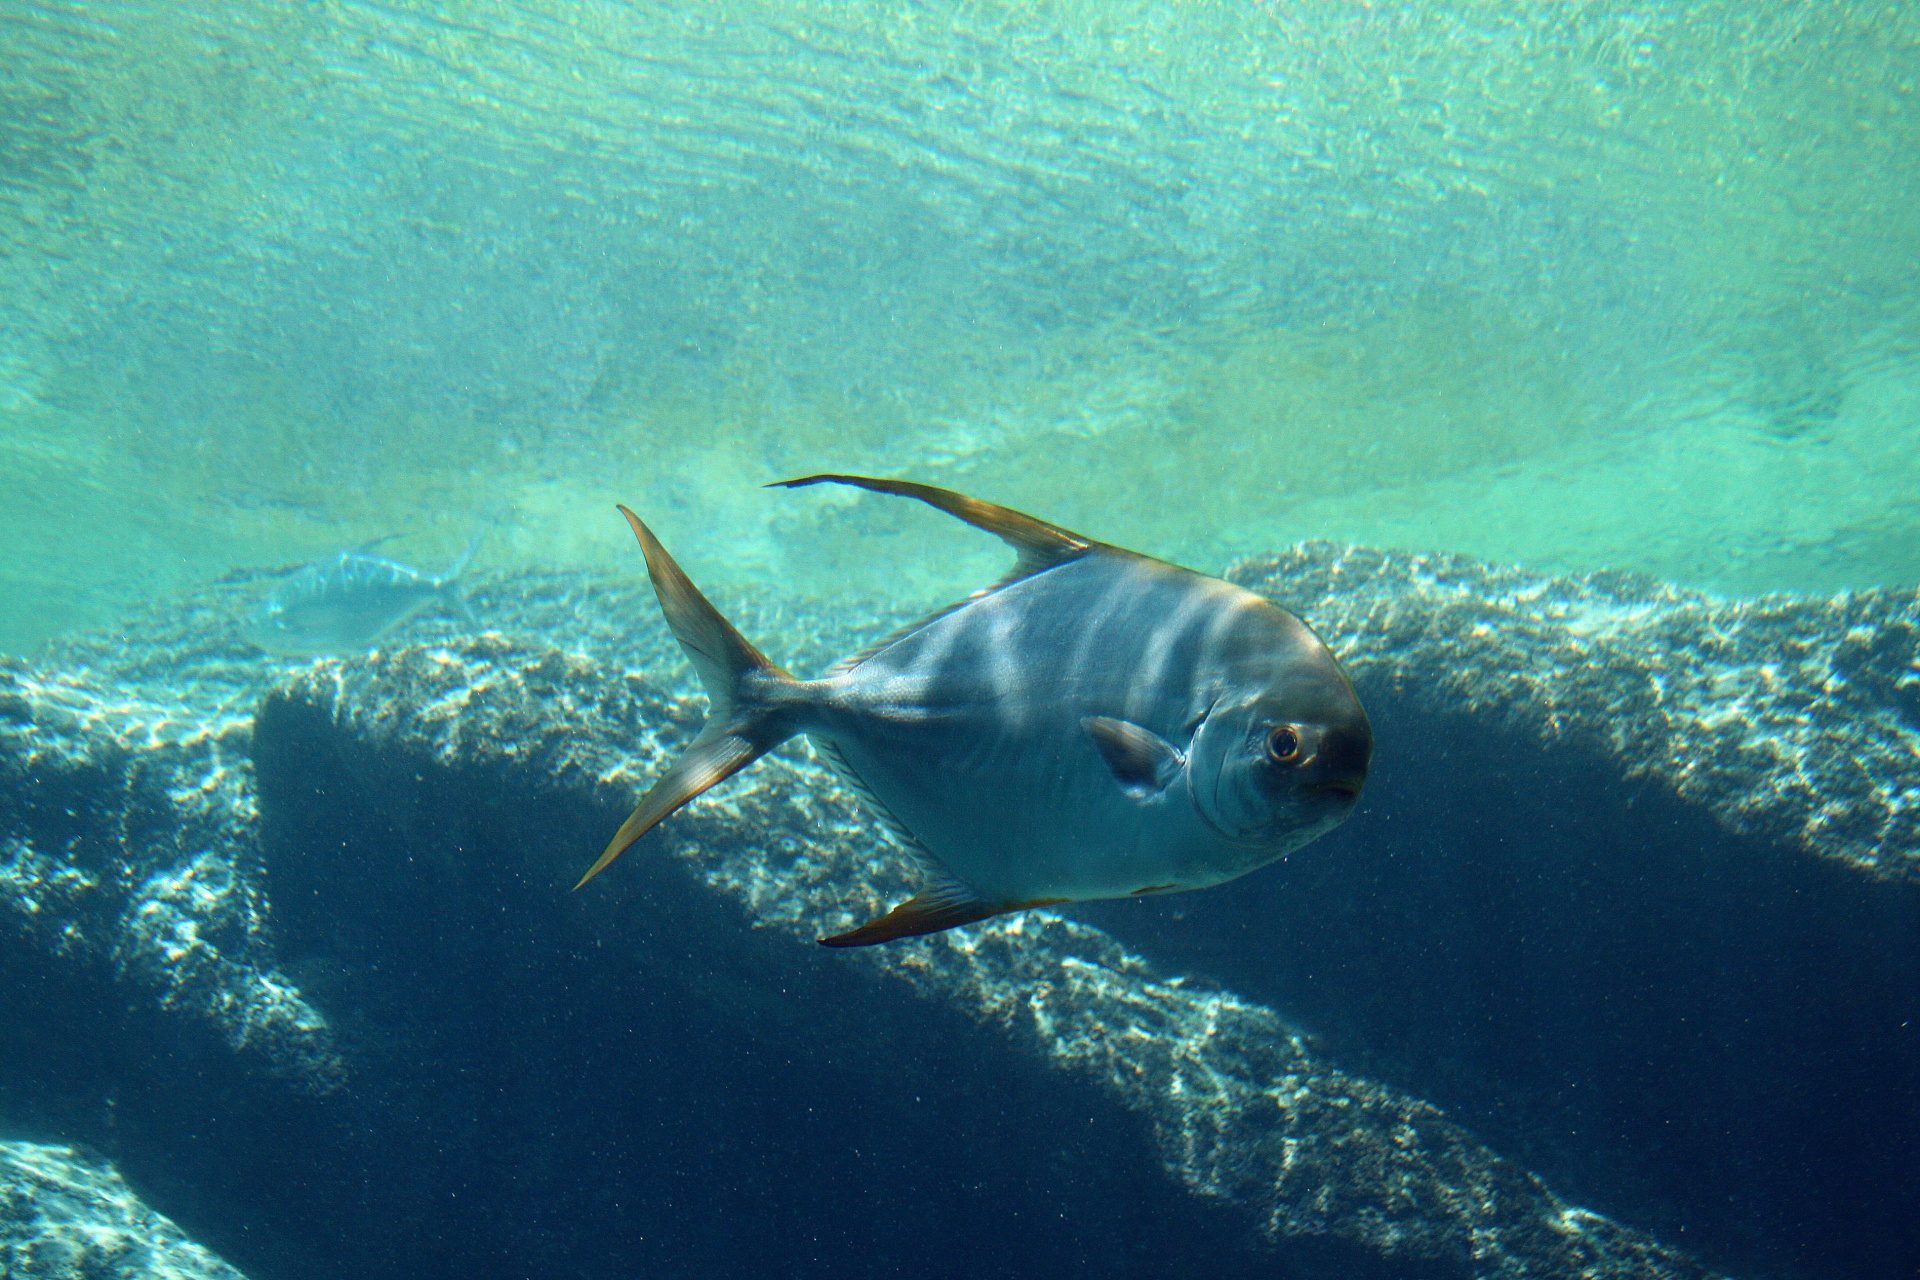 Pompano Type Fish In Aquarium